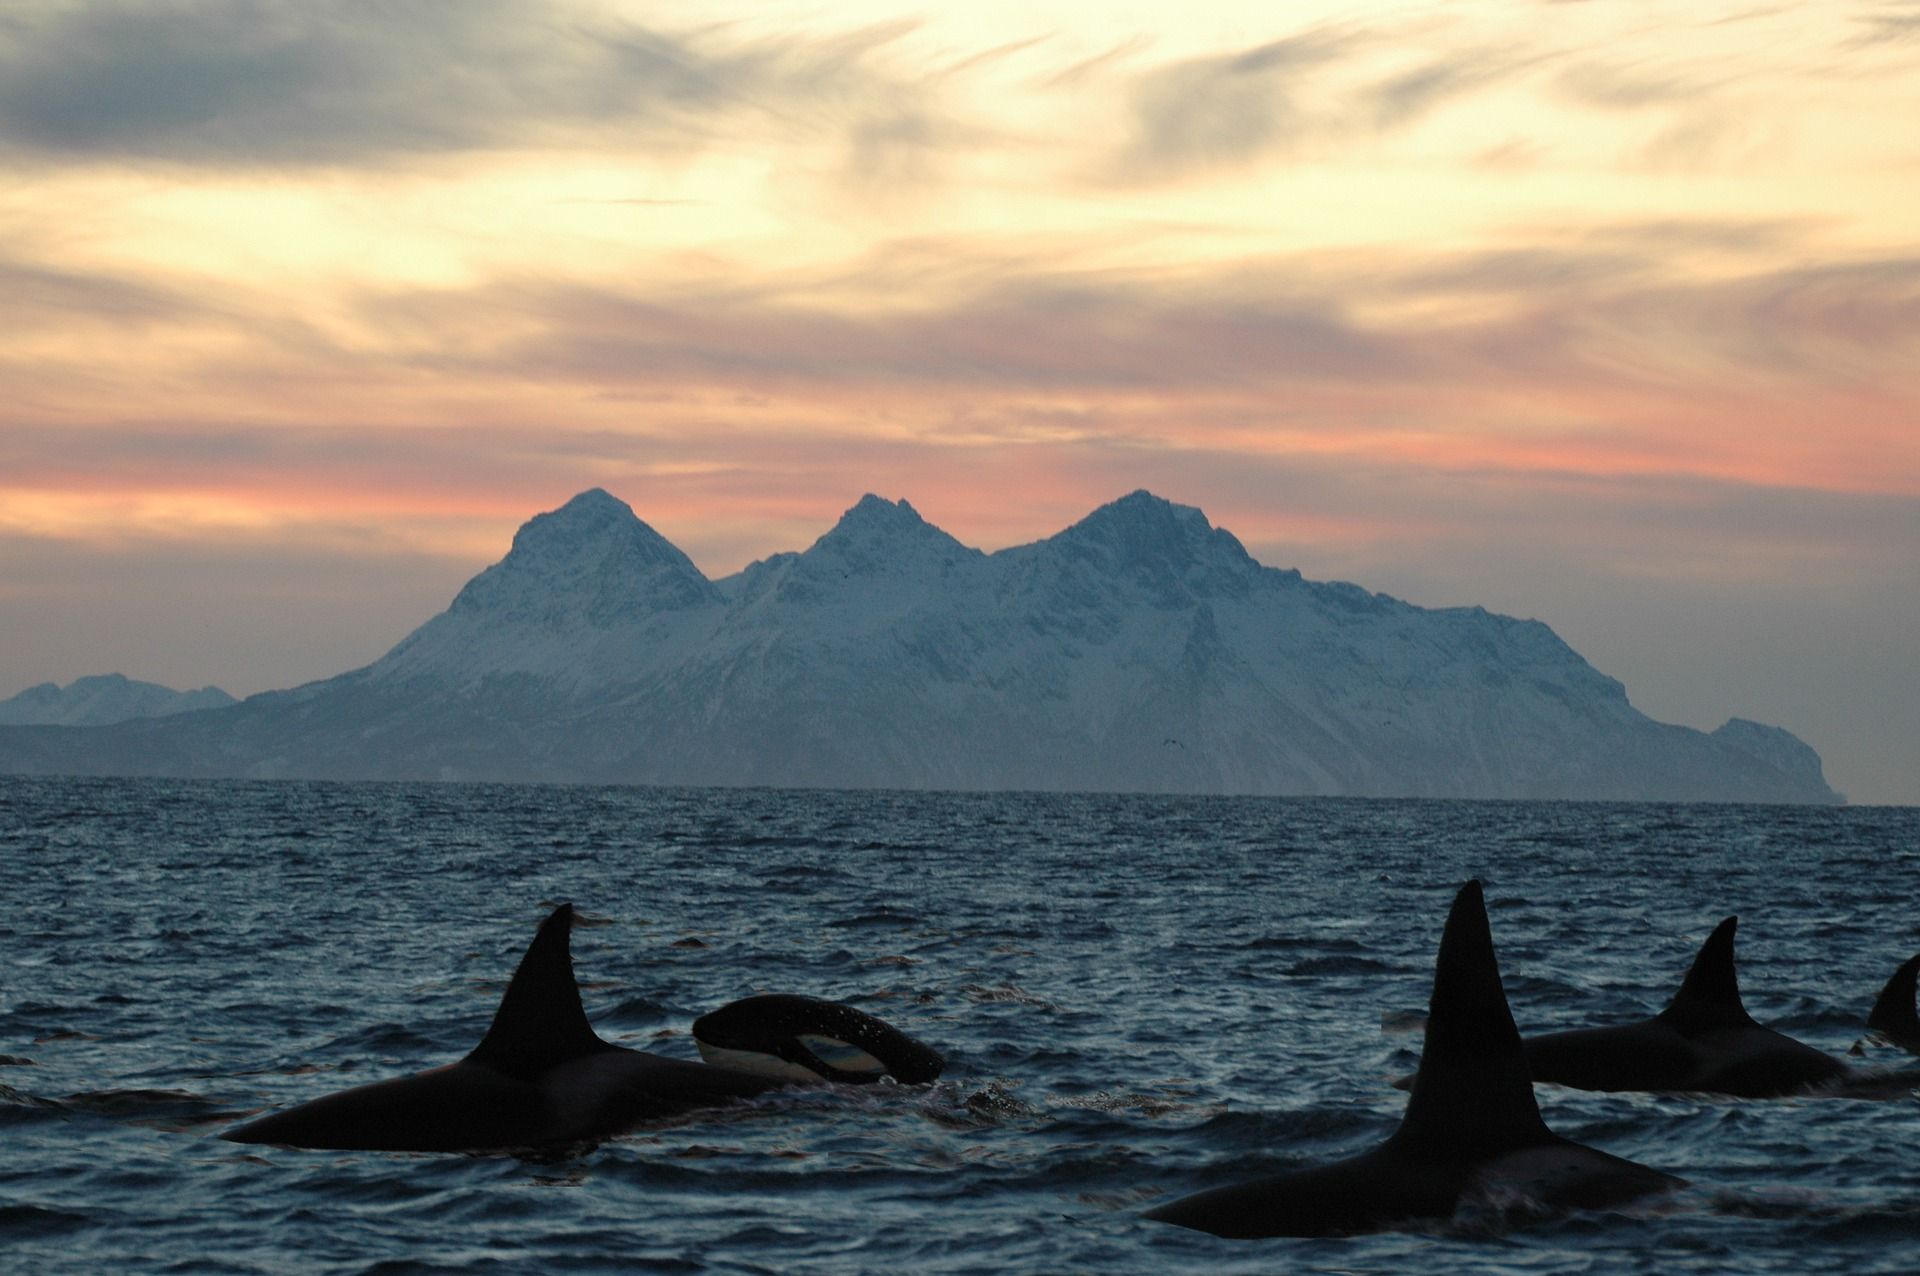 Ejemplares de orcas en el océano. Acuerdo global para hacer frente a la contaminación marina por plásticos / Foto: Chris Amos - Pixabay